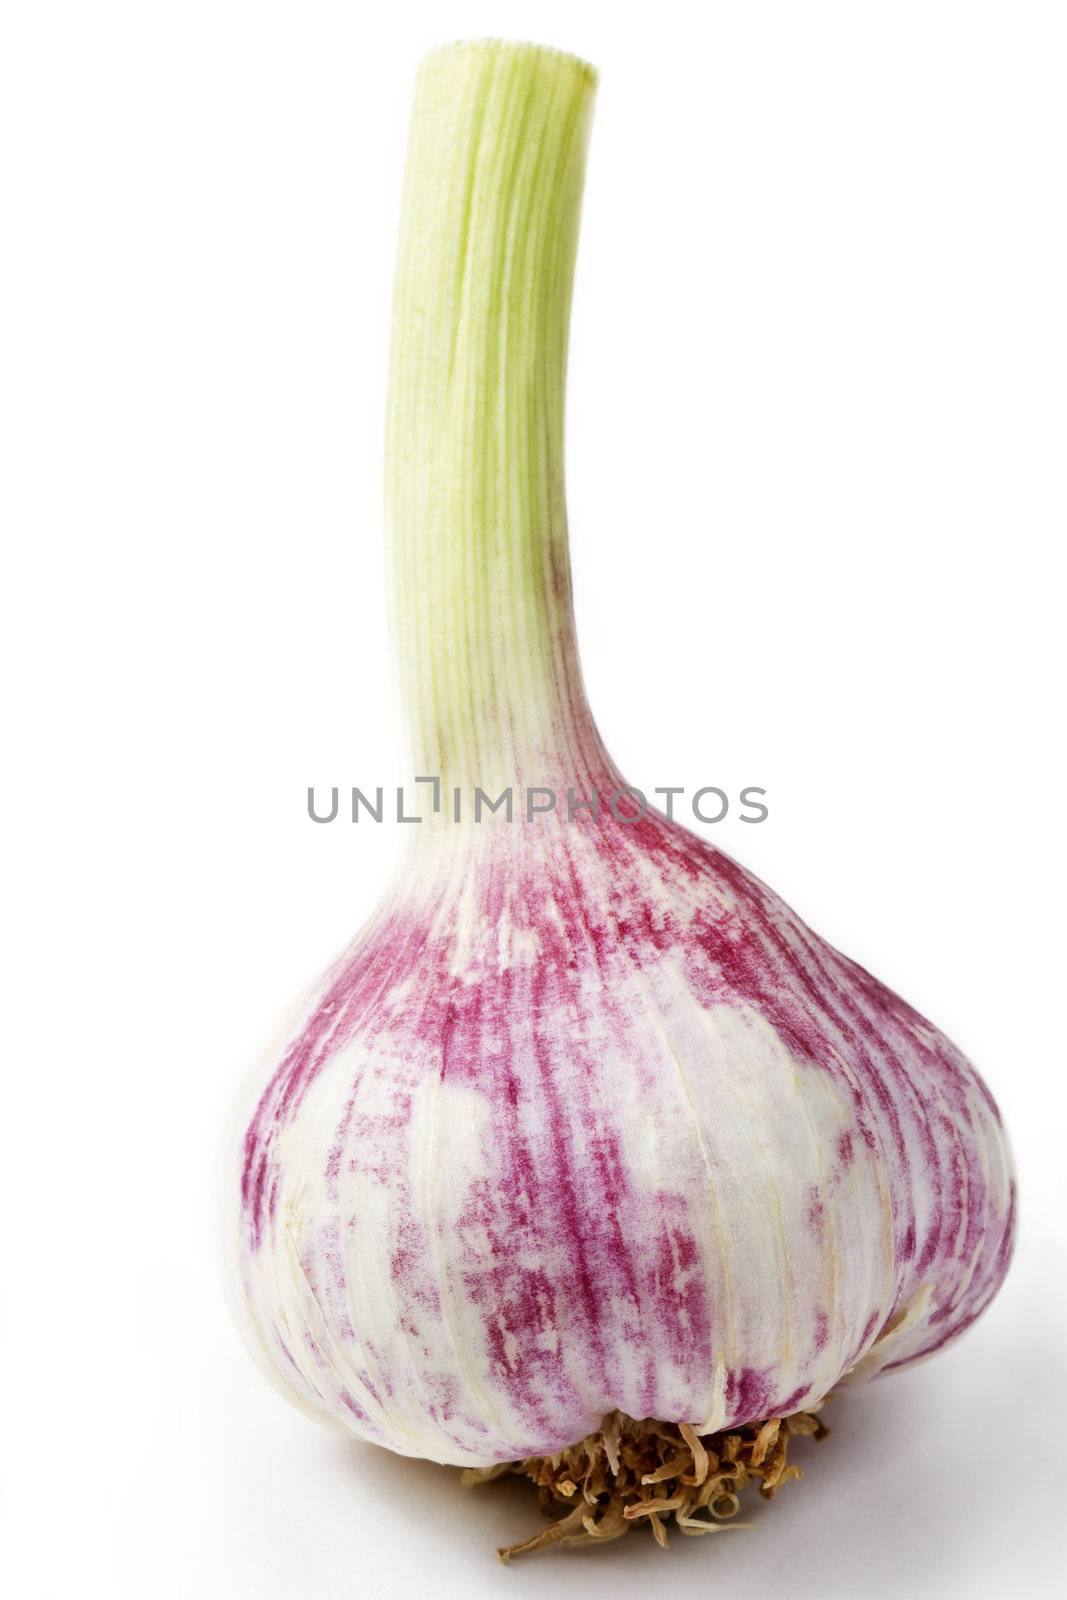 purple garlic on white background